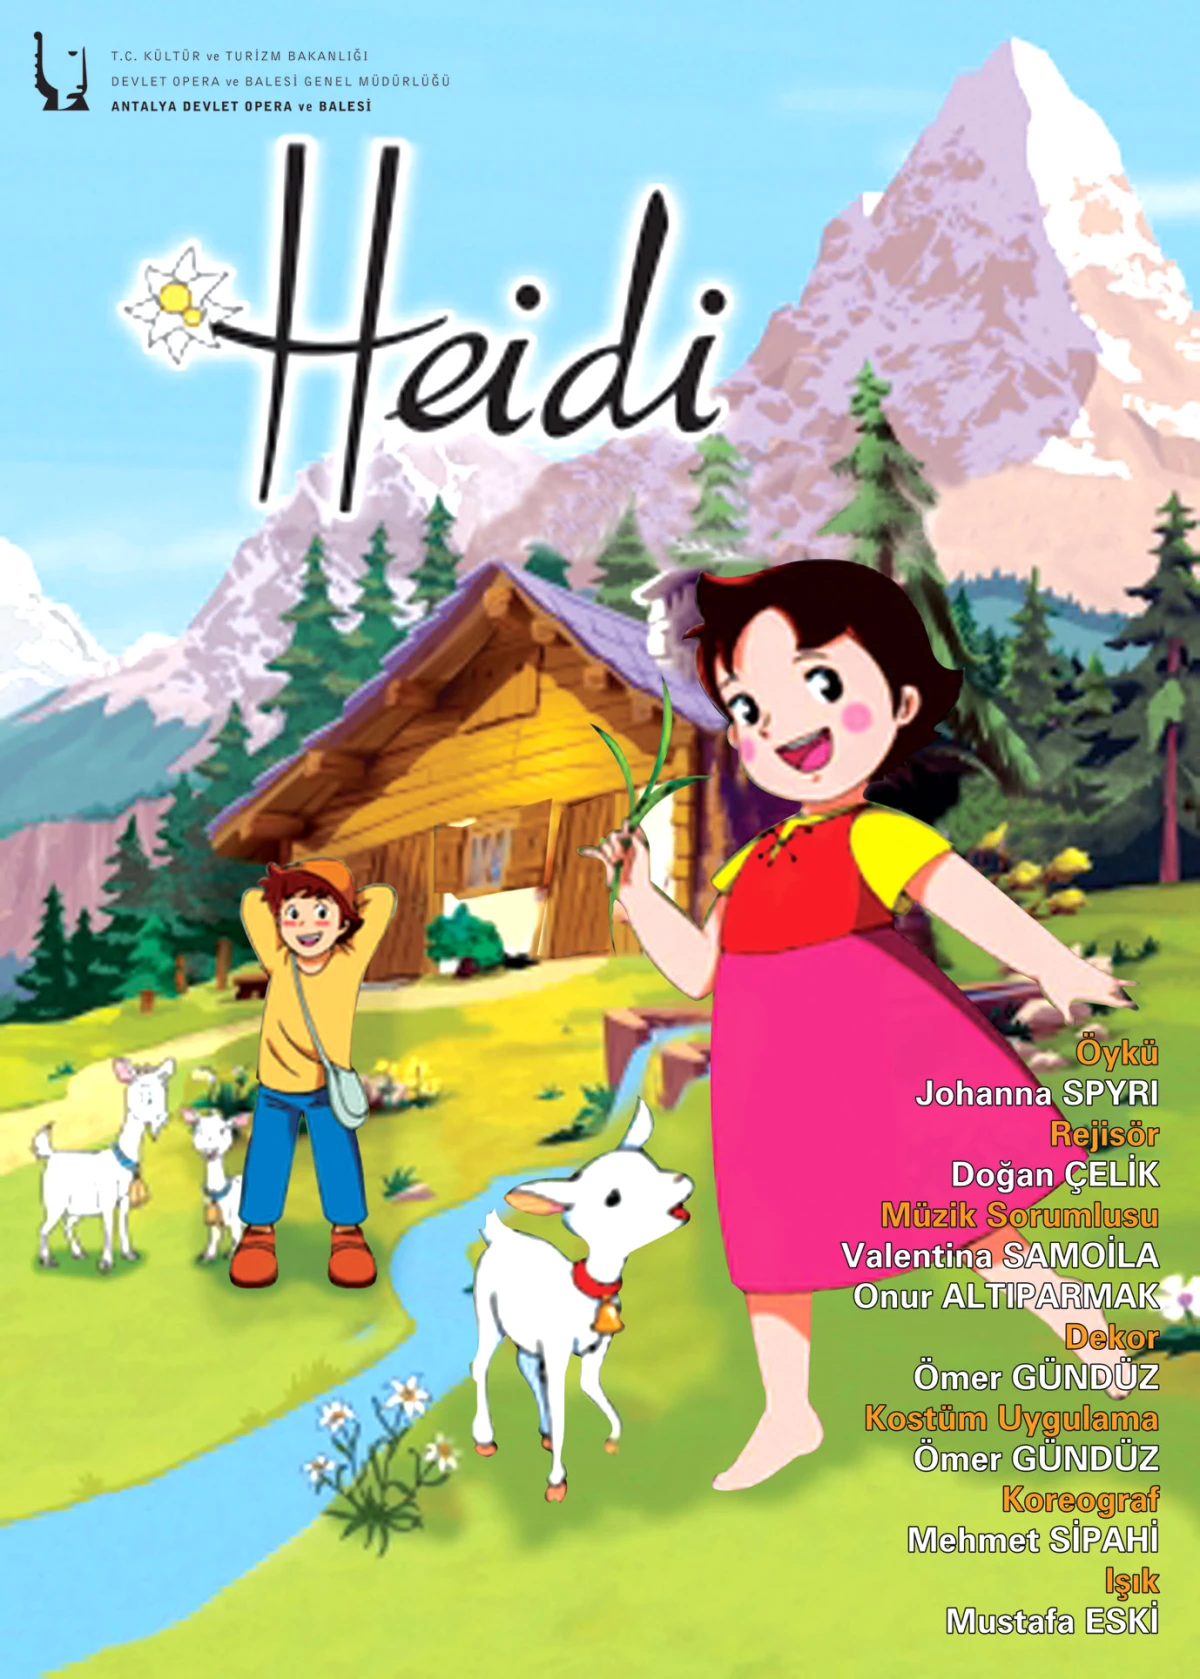 Alpler’in Sevimli Kahramanı Heidi Antalya’da

